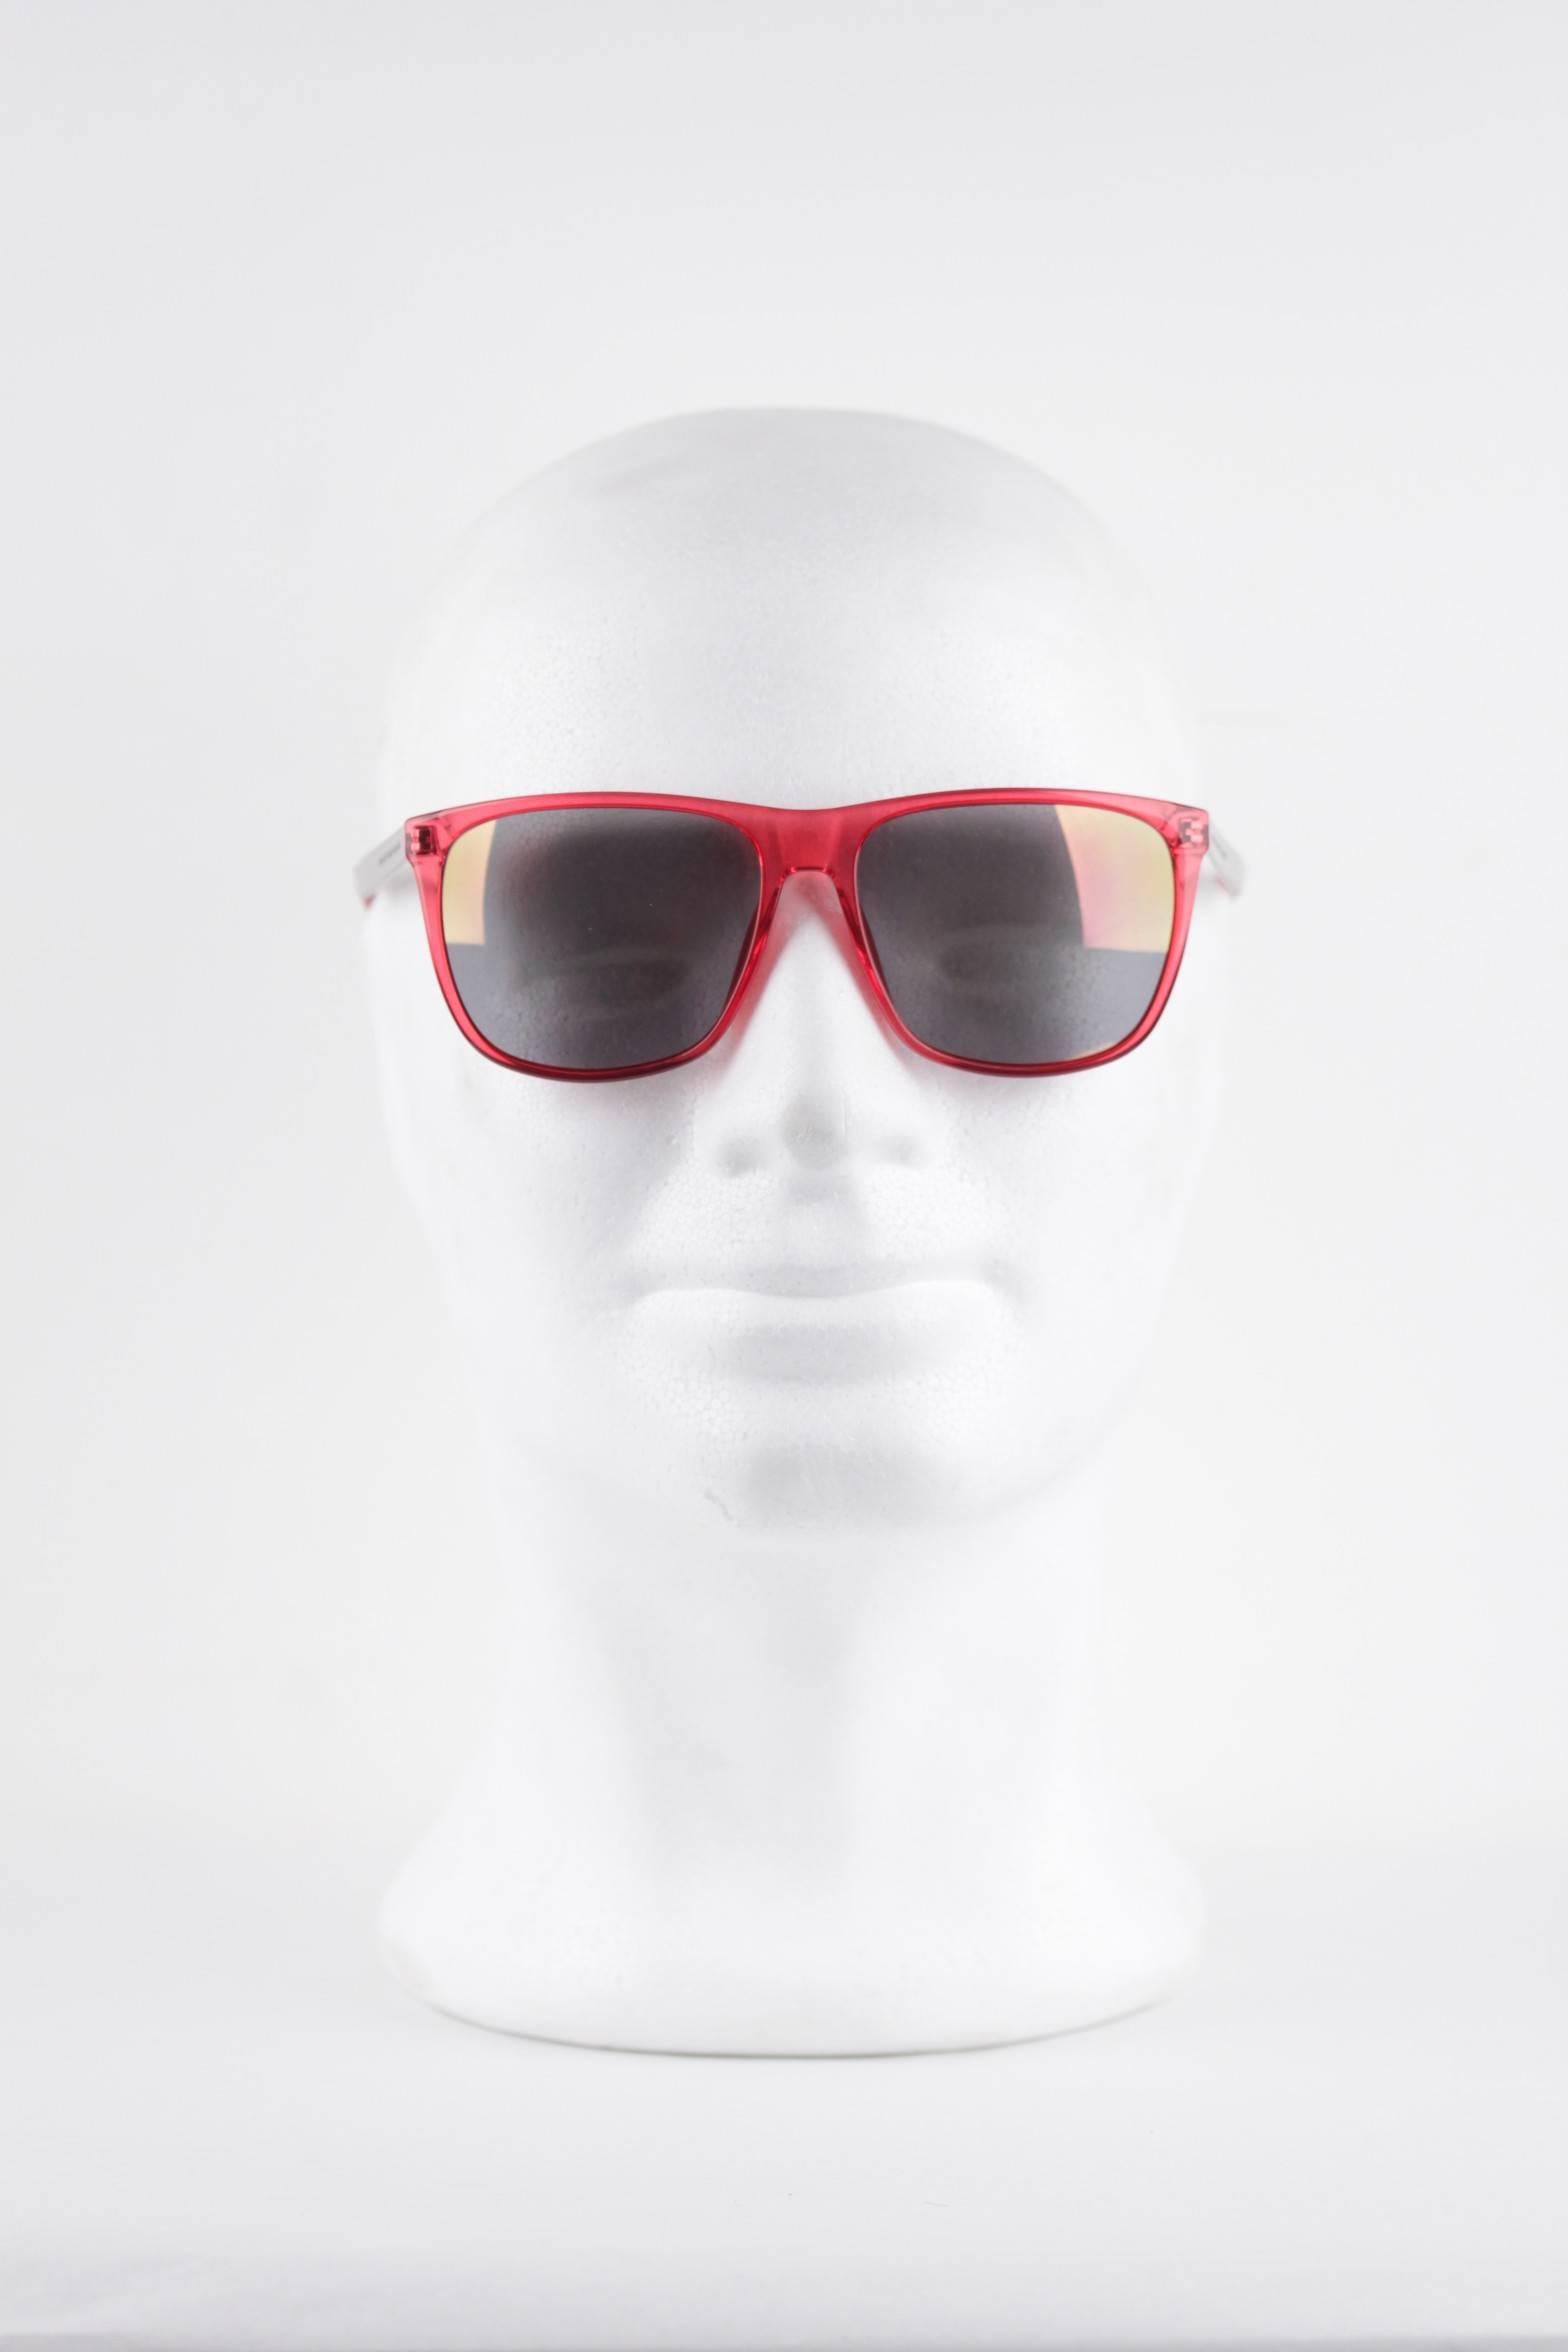 MARC by MARC JACOBS MINT unisex sunglasses MMJ 424/S 5LX 56/16 Red Eyewear w/CAS 3